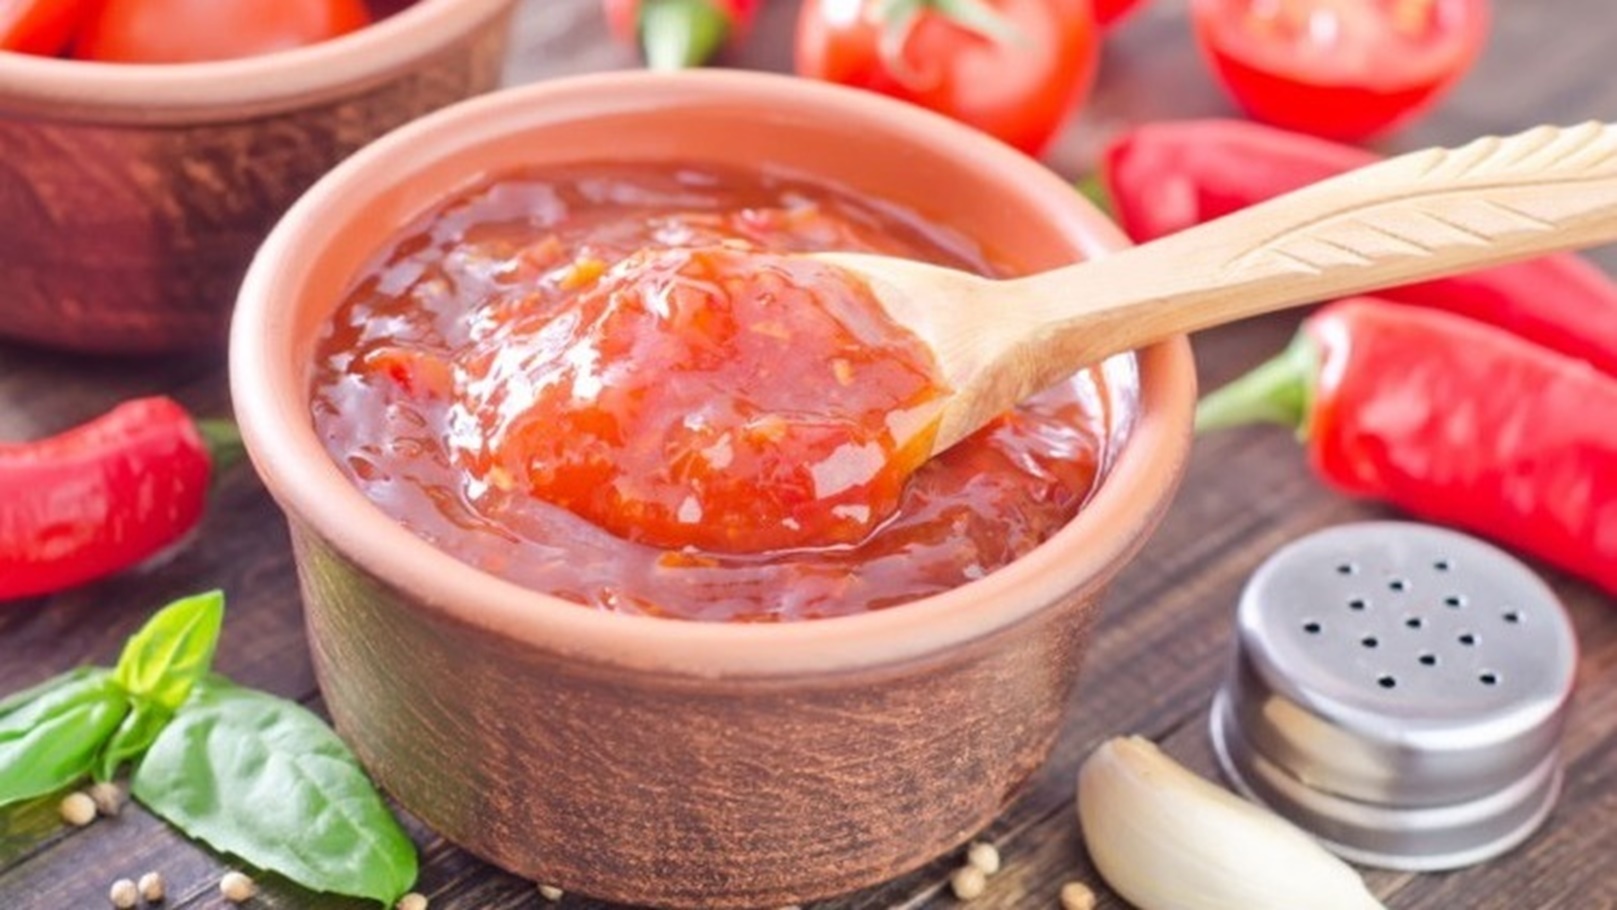 طريقة عمل صلصة الطماطم المكسيكية